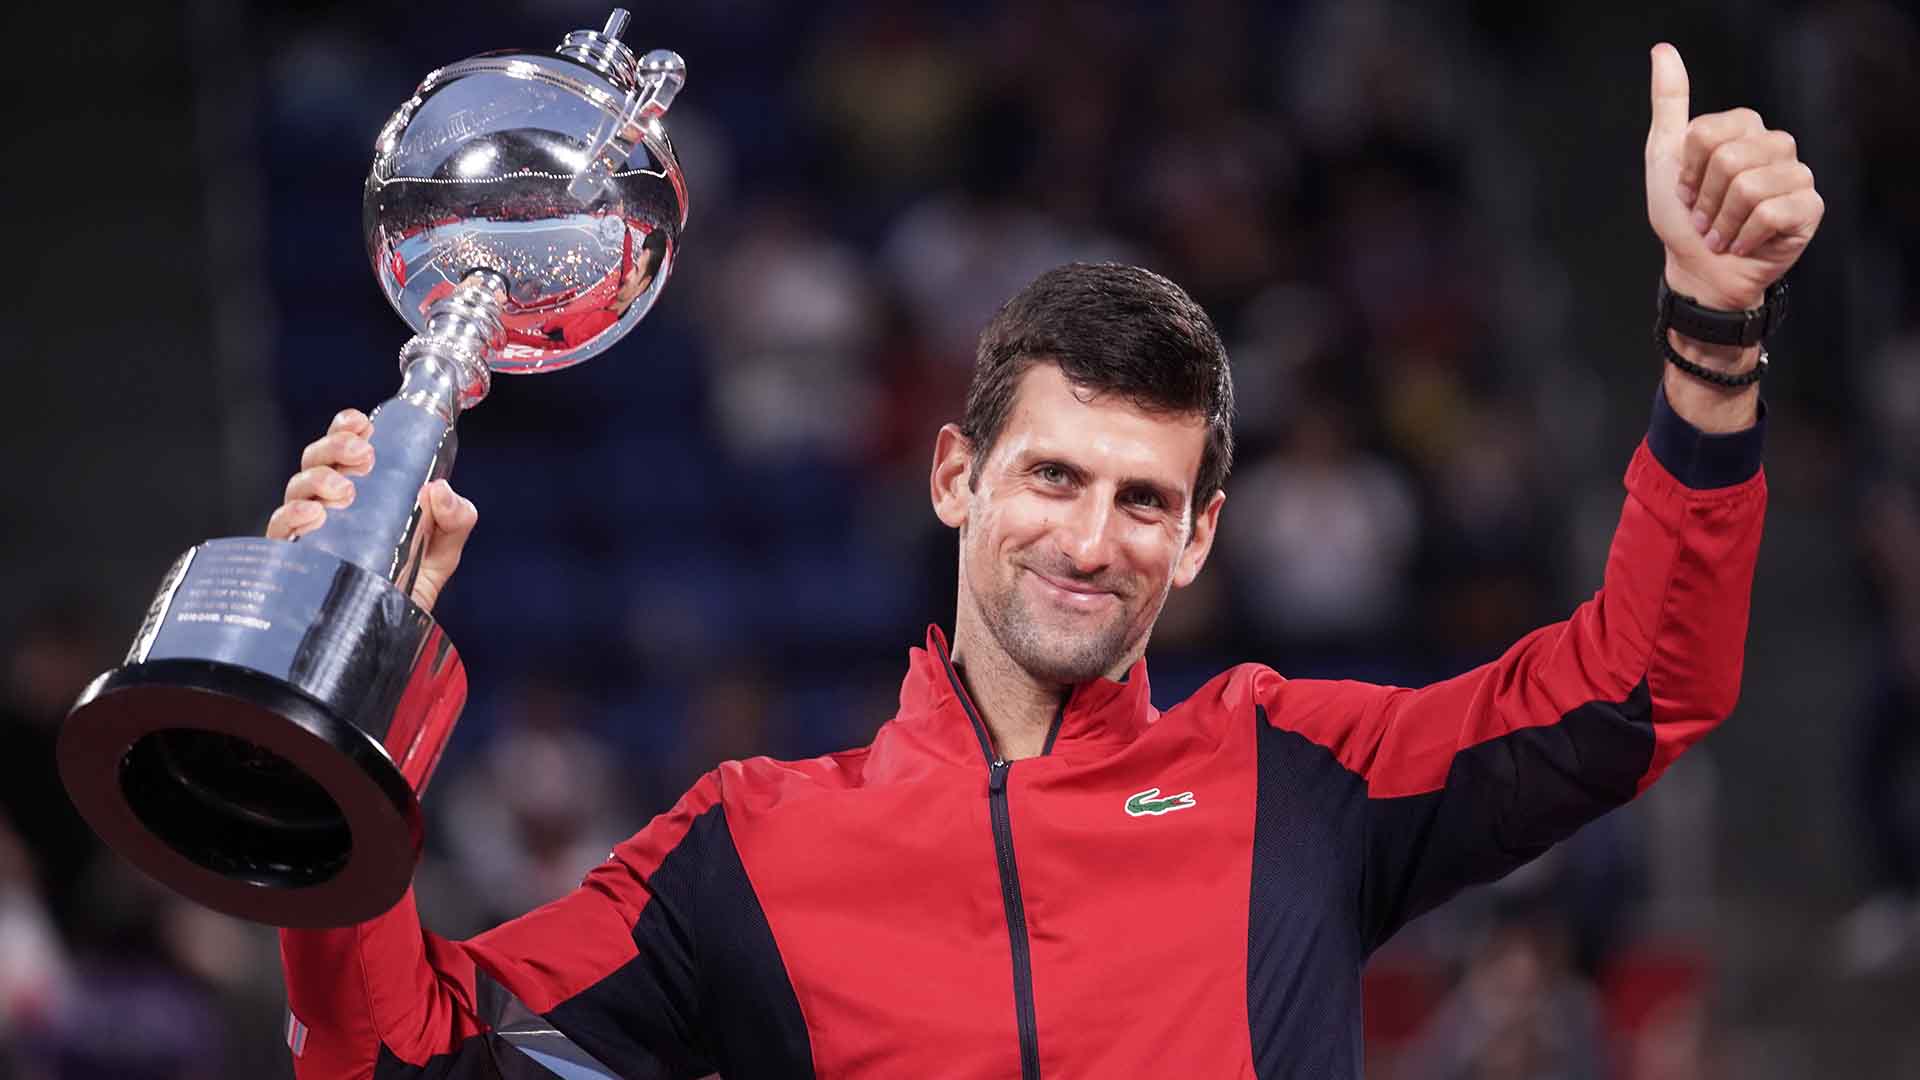 Novak Djokovic defeats John Millman in straight sets to lift the Rakuten Japan Open Tennis Championships trophy on Sunday.